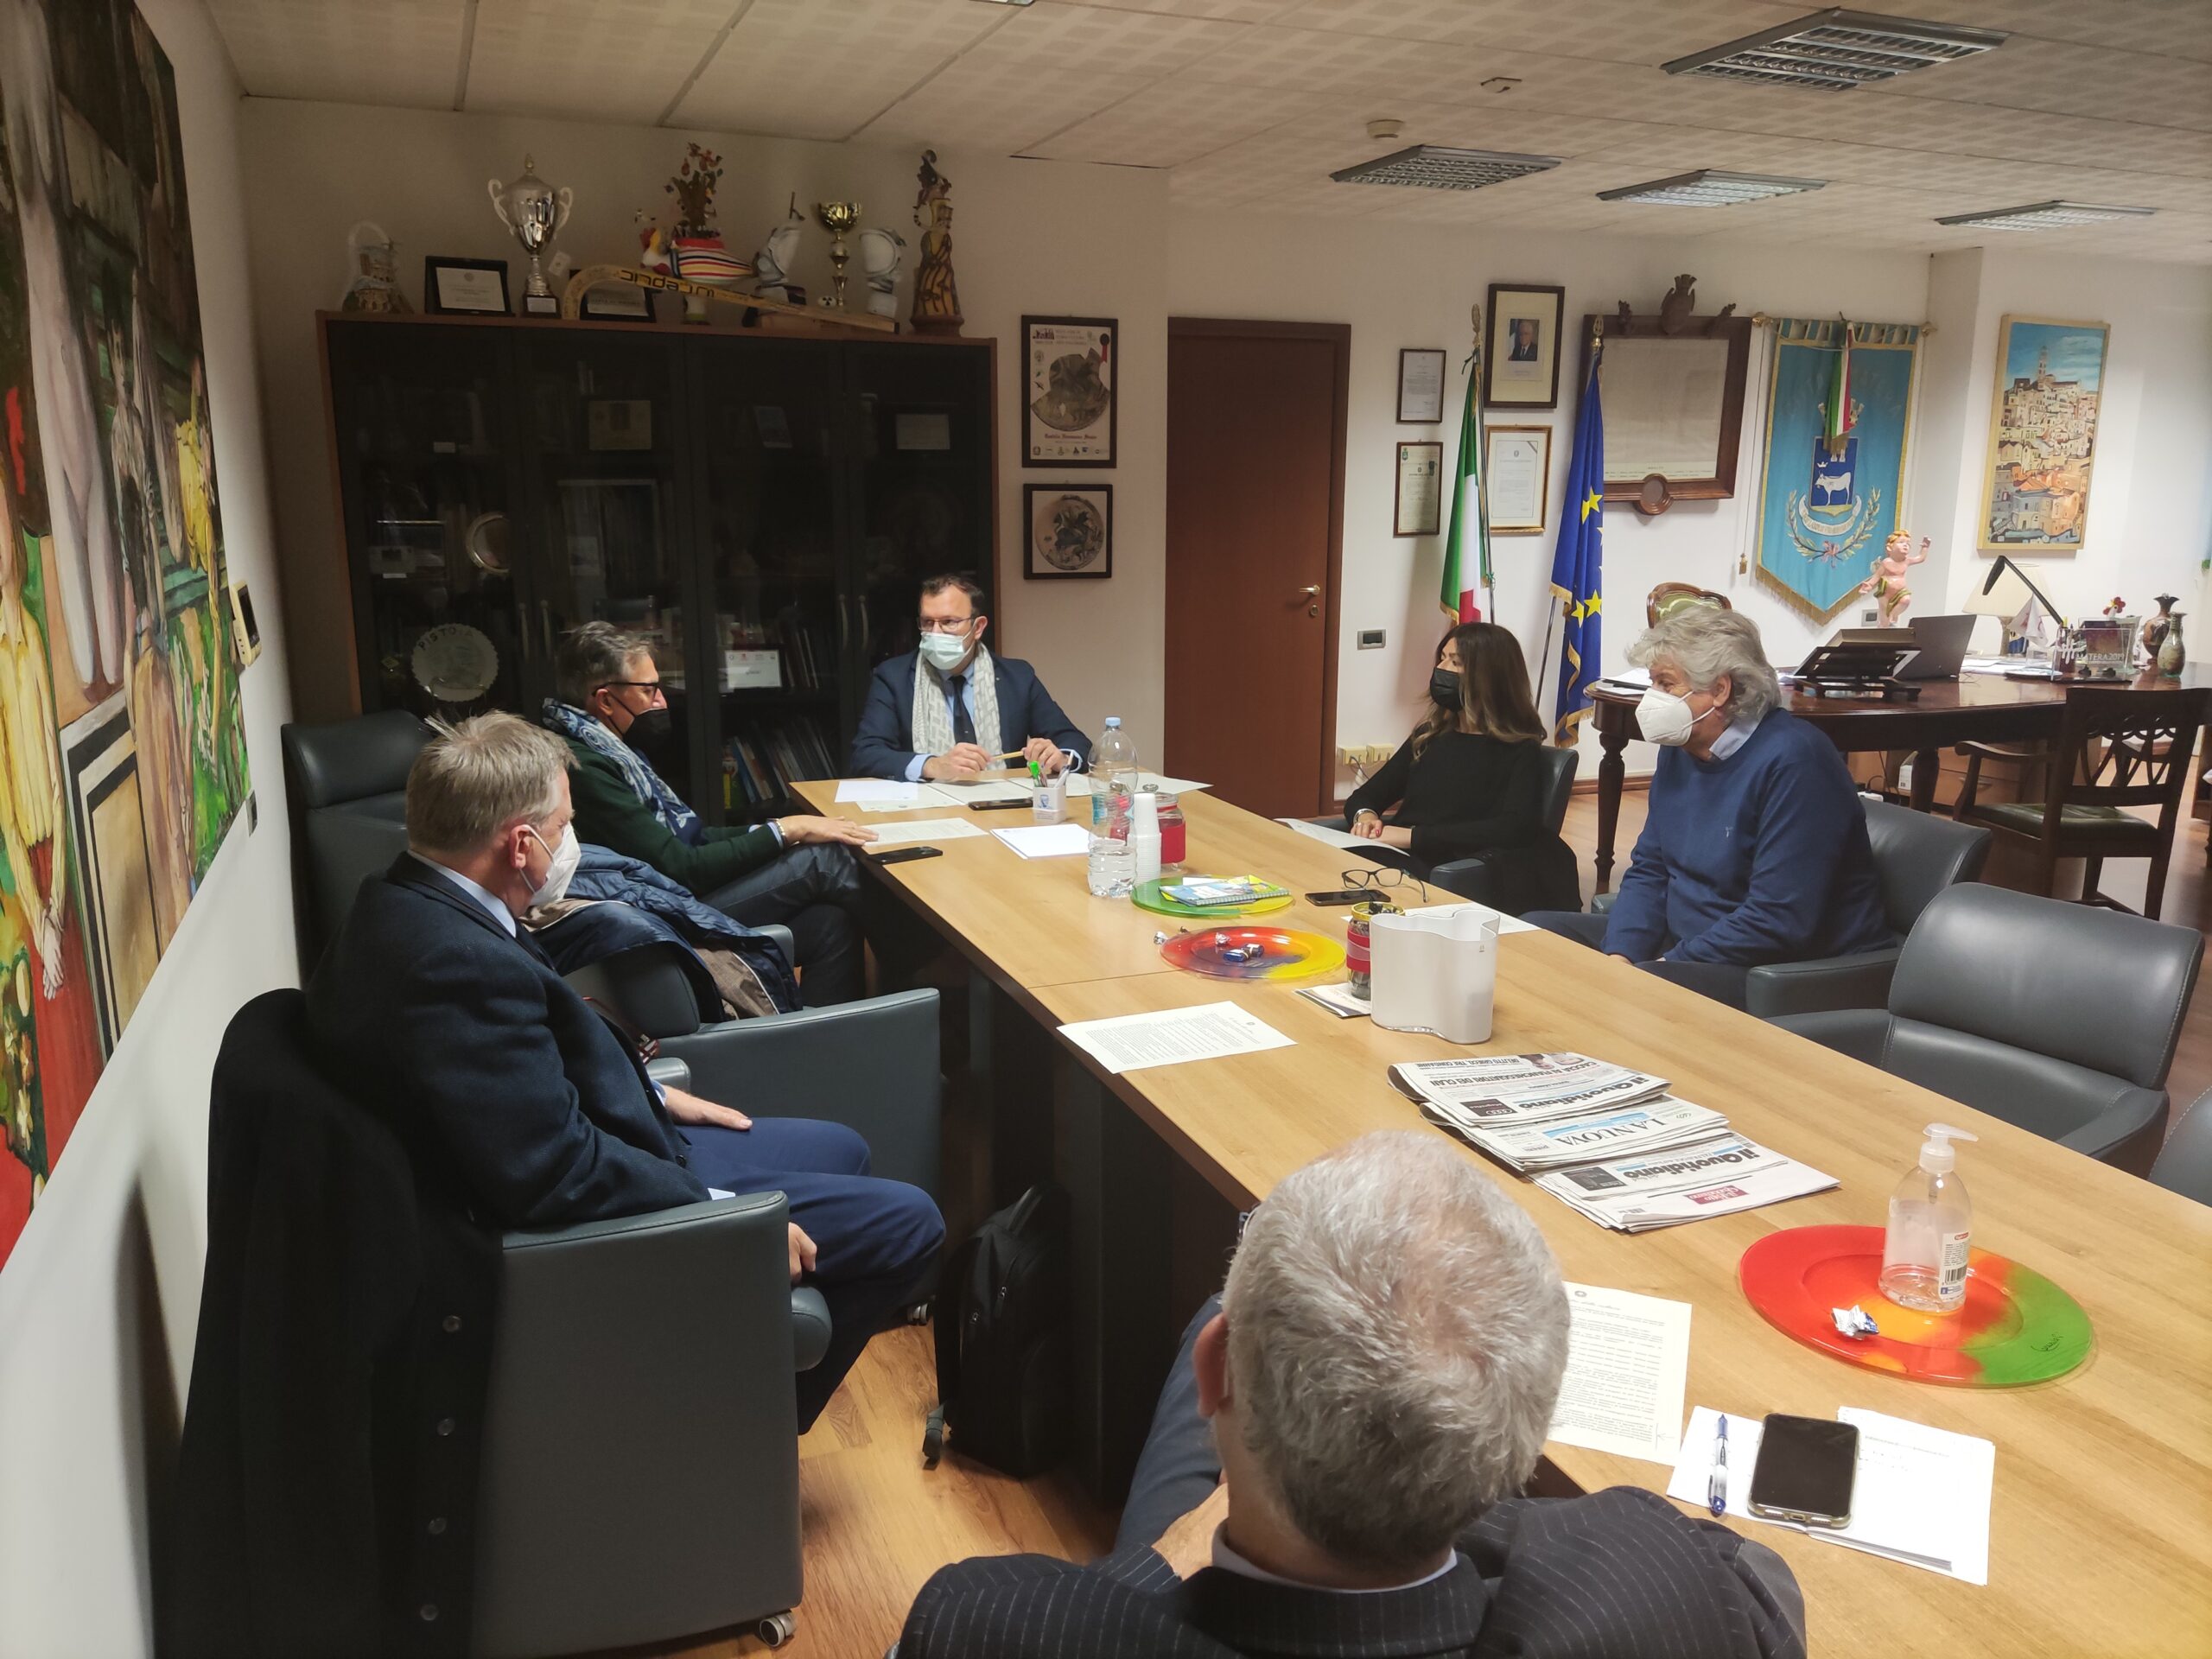 Il sindaco Bennardi accoglie l’invito del Direttore del Conservatorio Vizziello convocando un tavolo per il progetto di una Orchestra Stabile Lucana a Matera